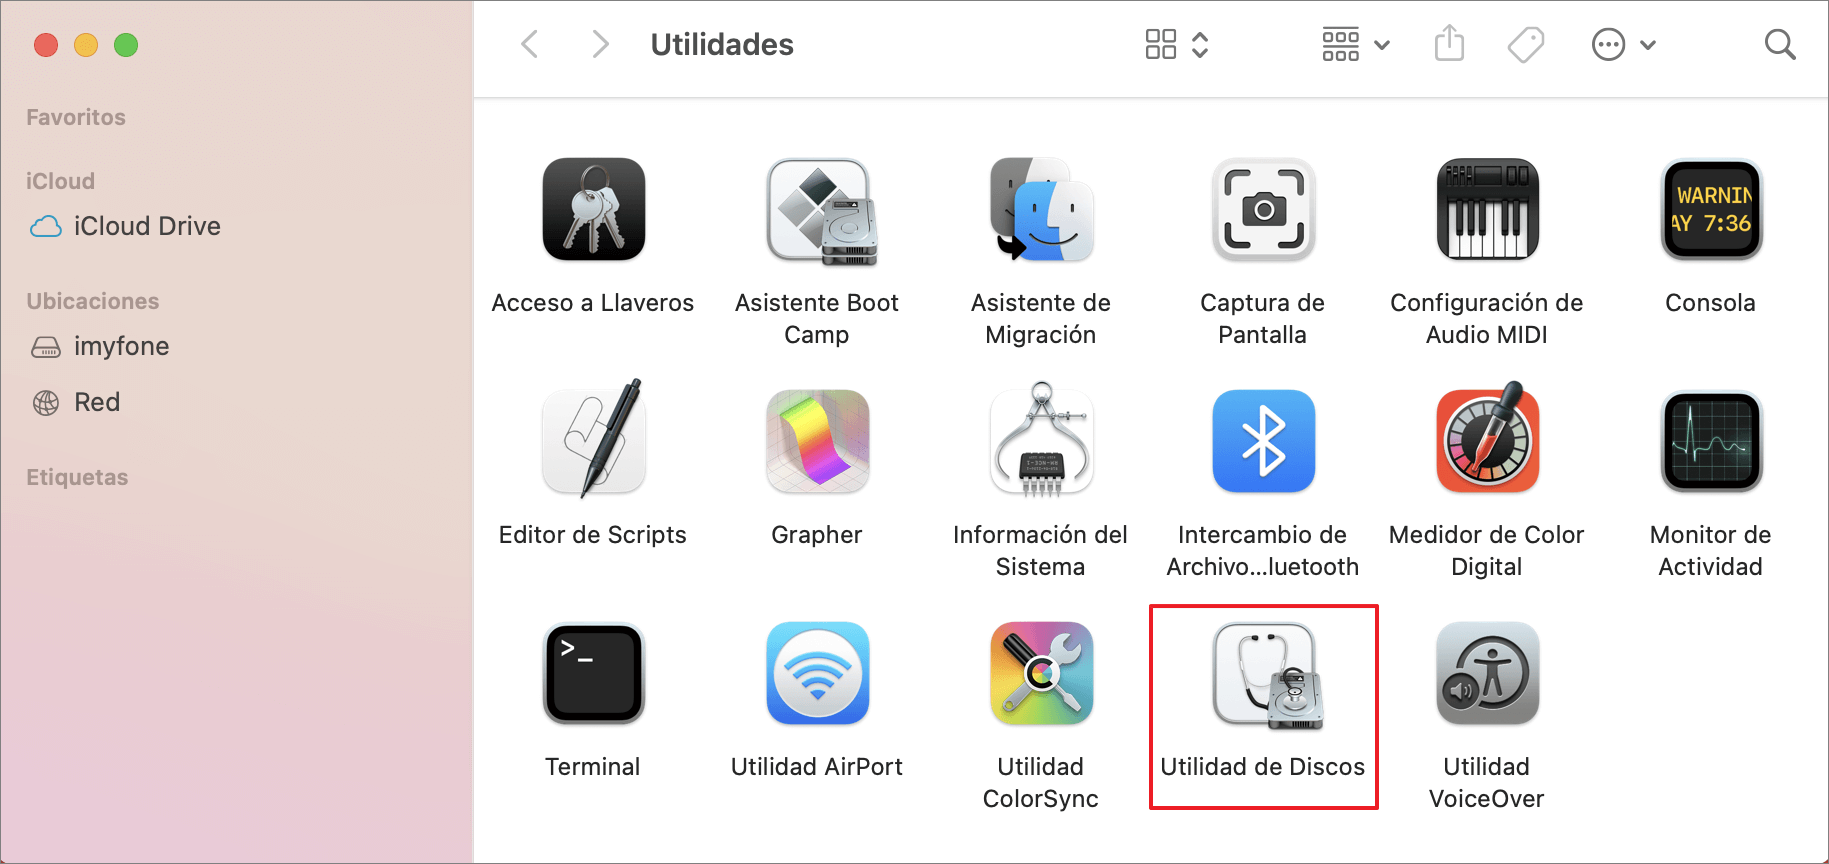 abrir utilidad de discos en Mac